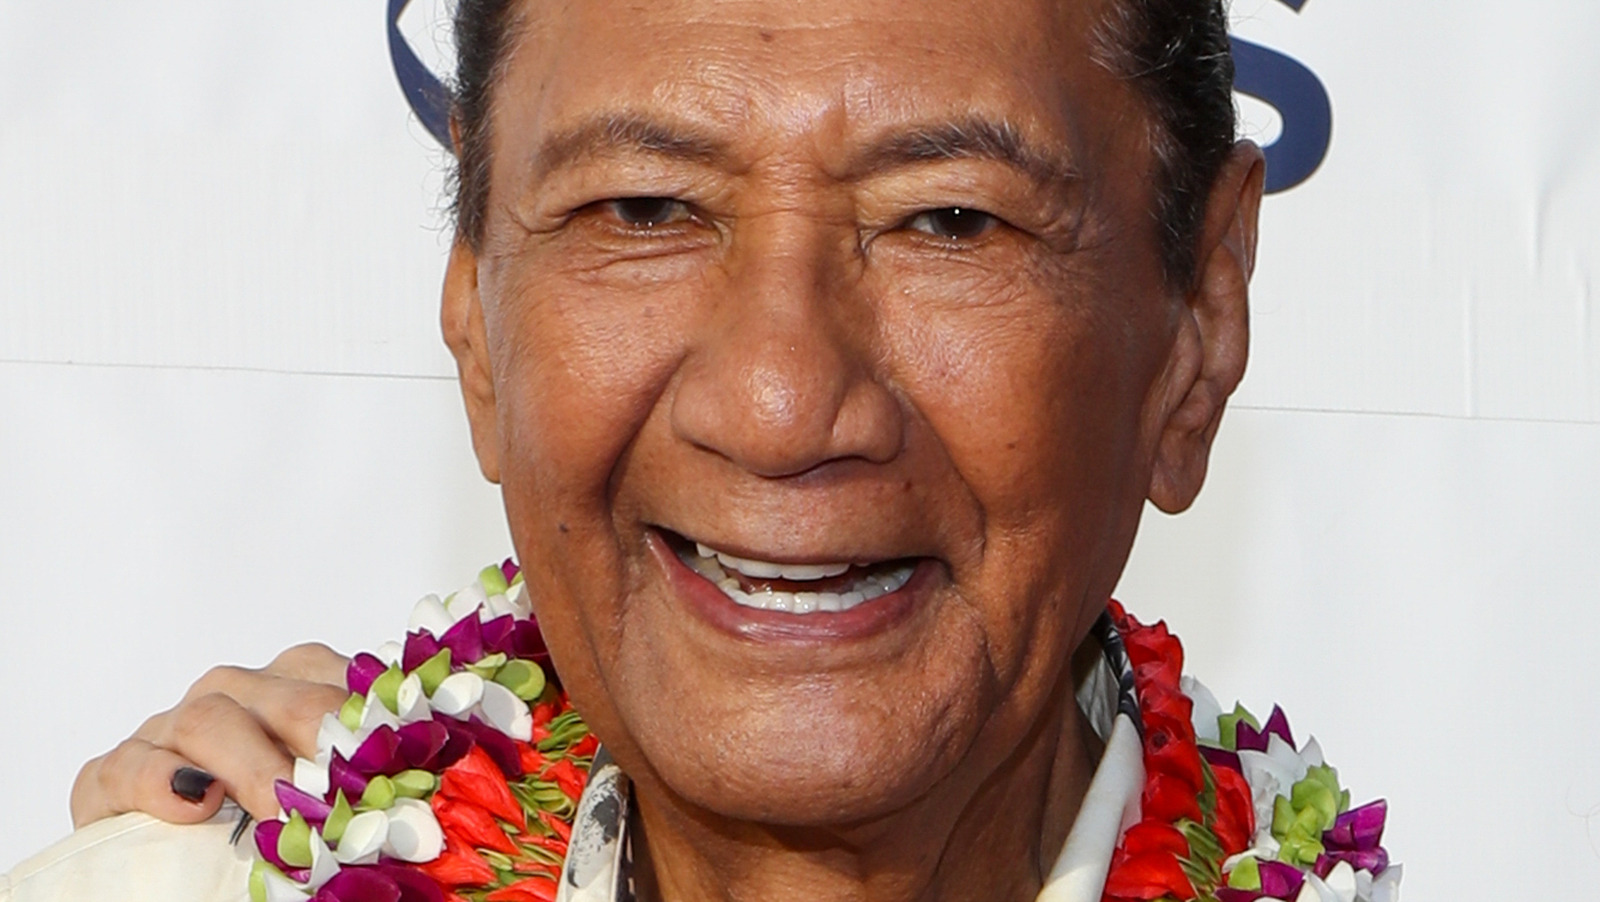 Actor Al Harrington recalls the original 'Hawaii Five-O' - Deseret News